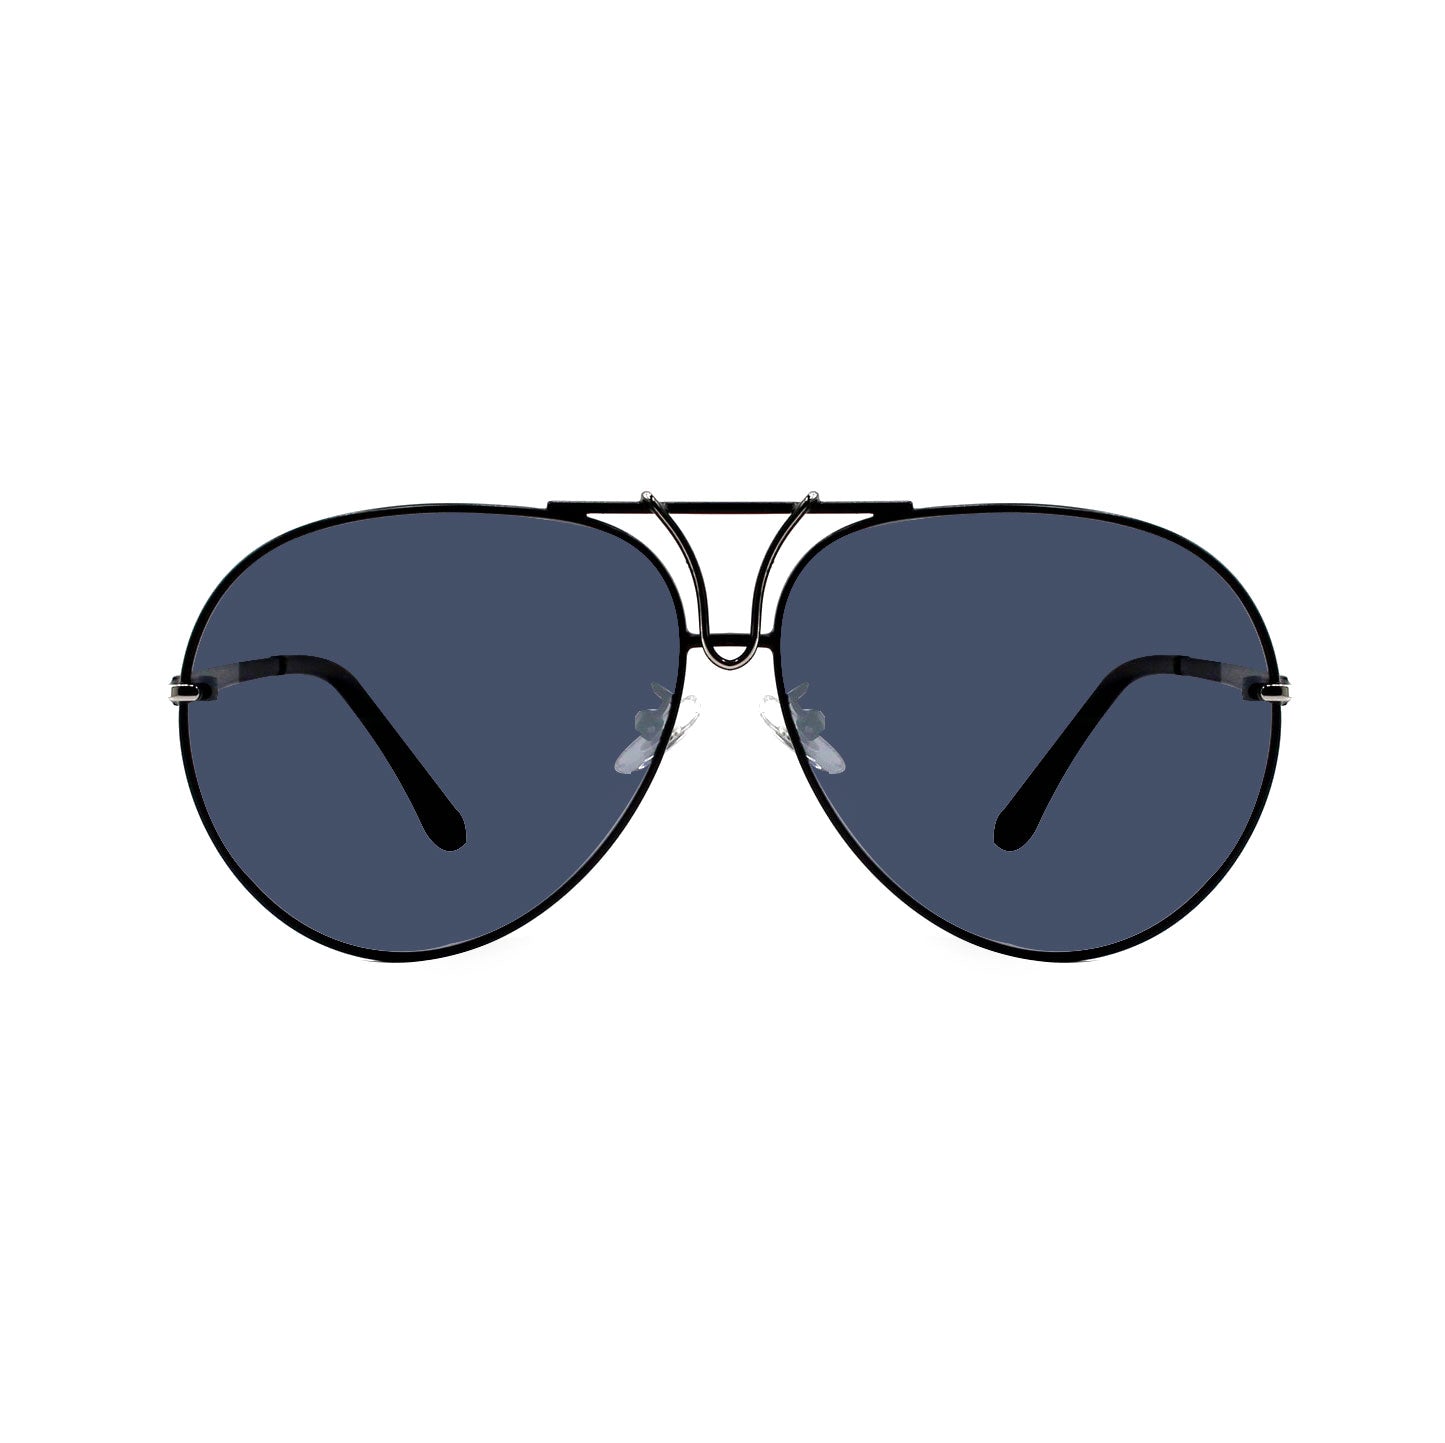 Shades X - Occhiali da sole polarizzati | Modello 7057